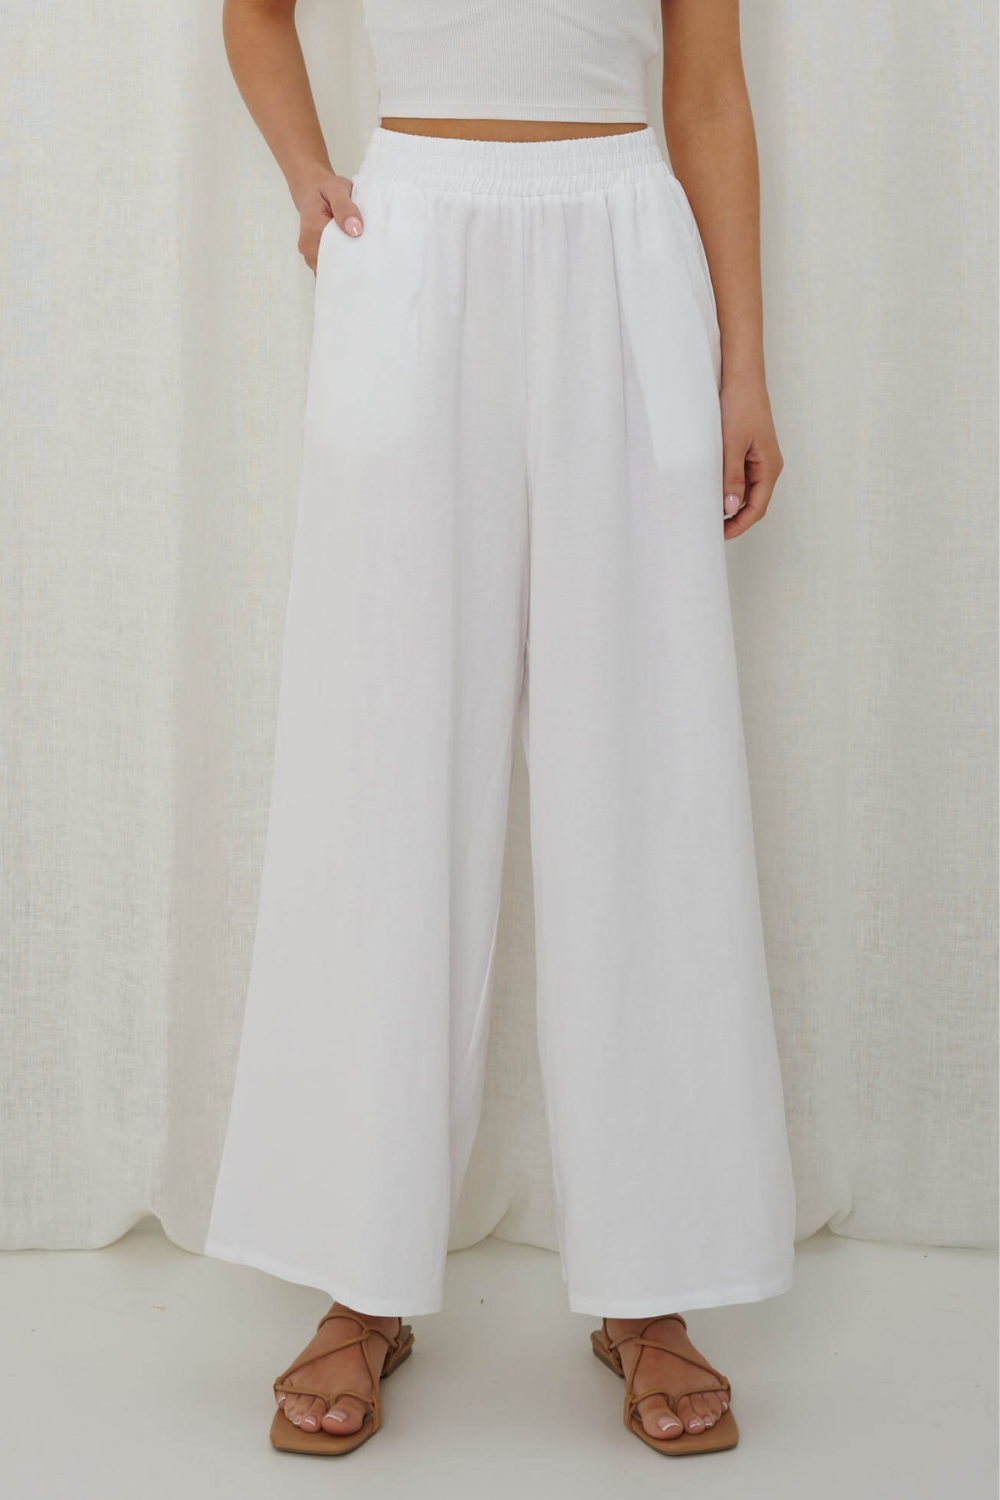 Iris Maxi Linen Pants - White